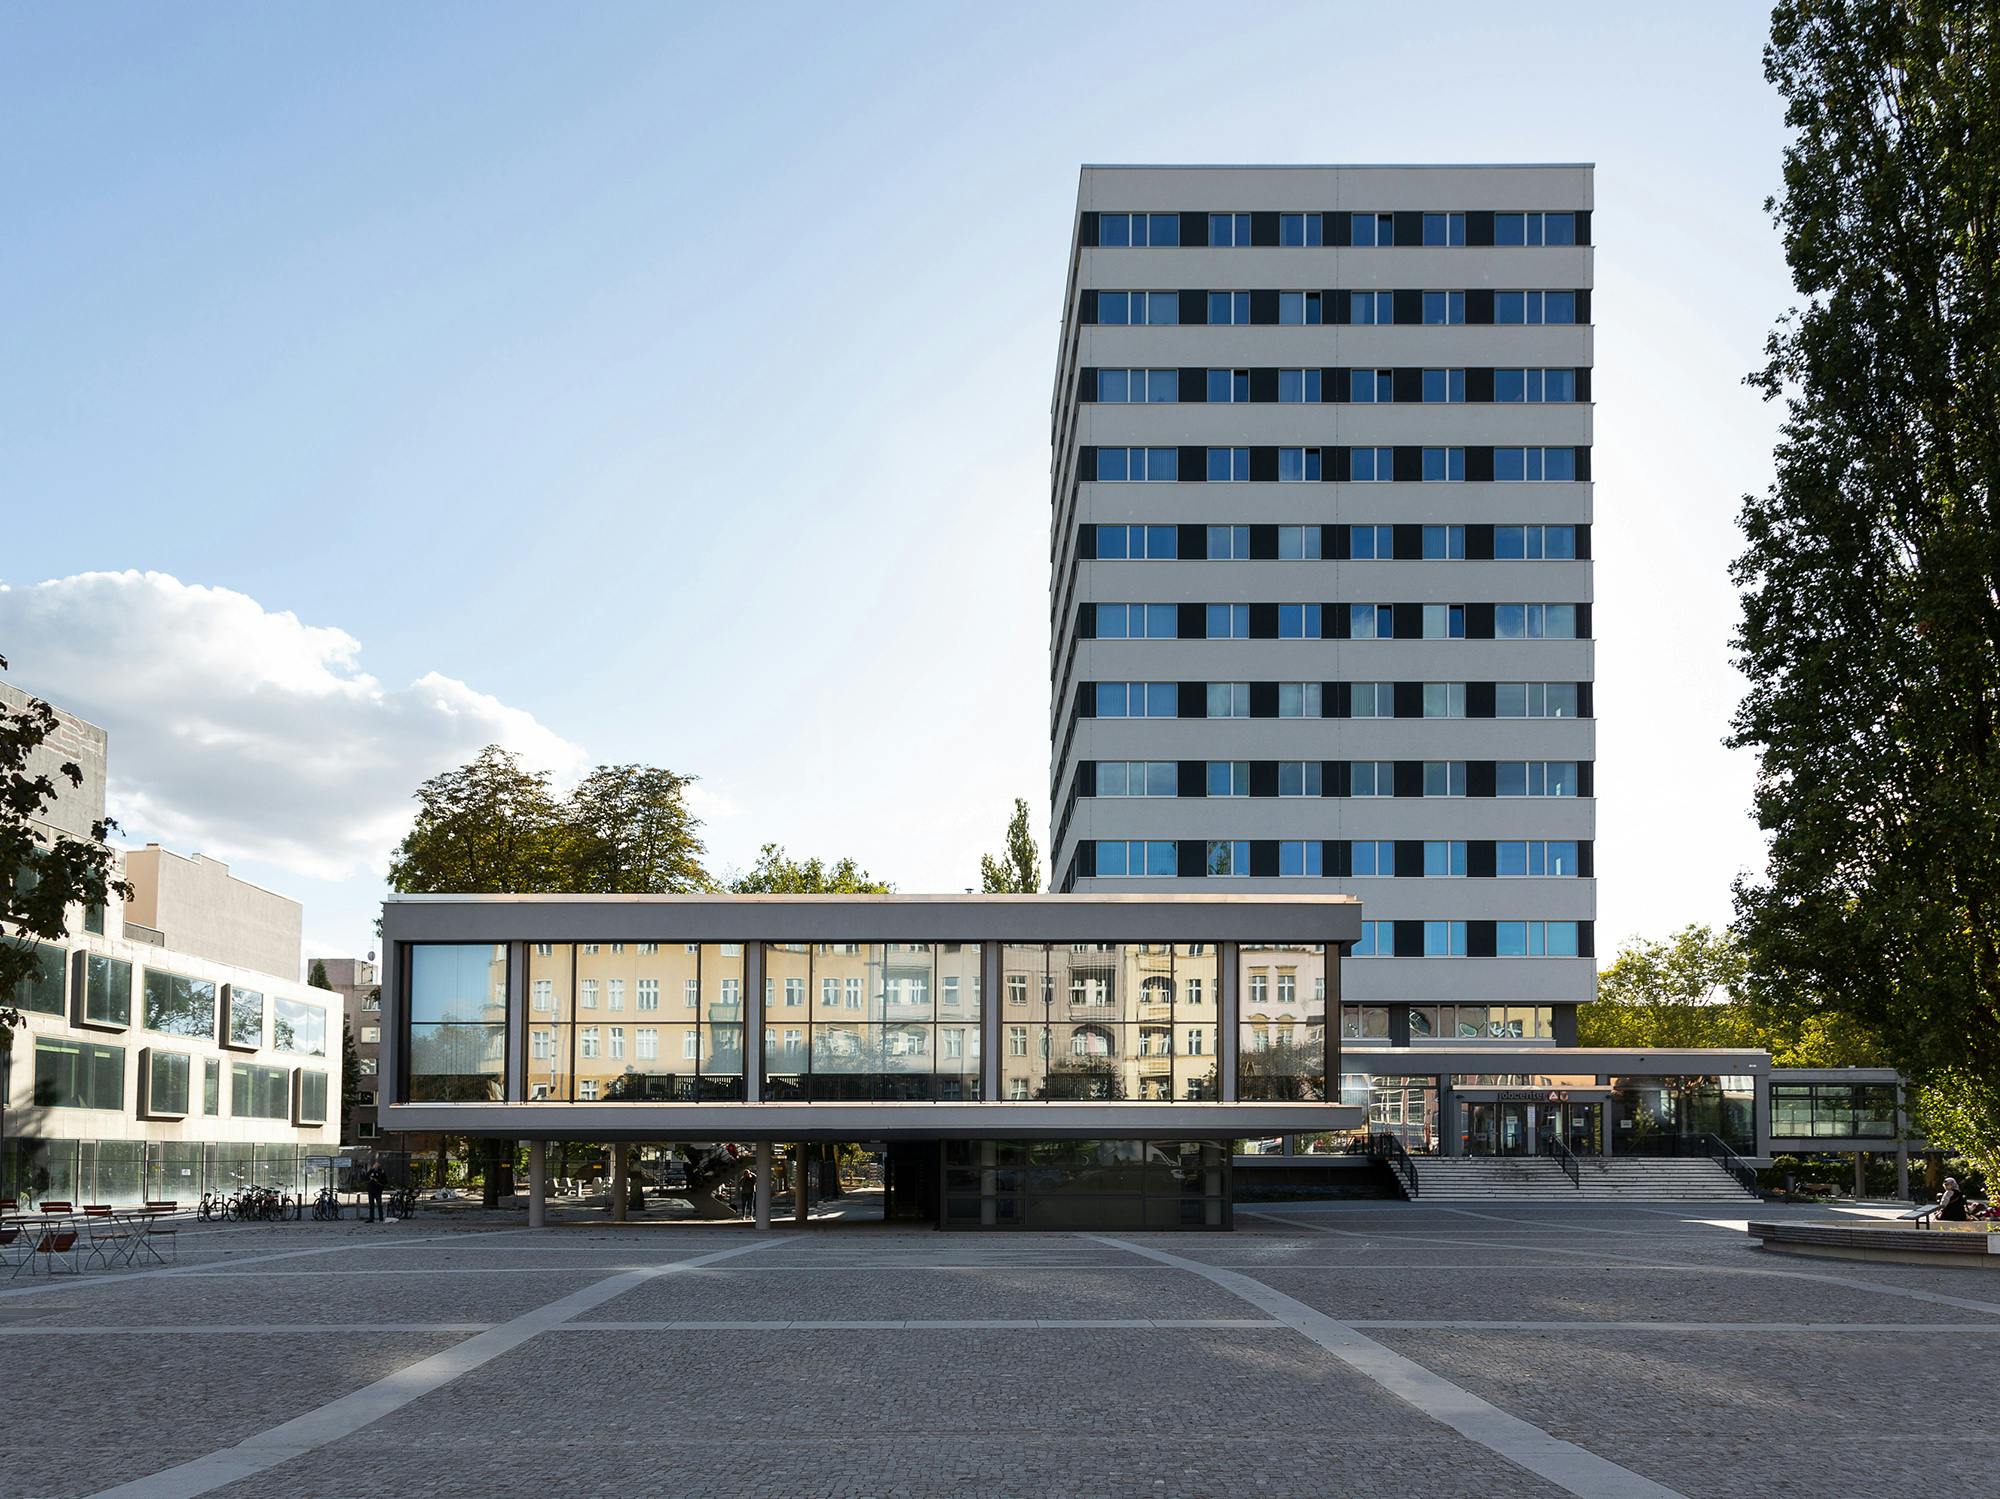 Horizontale Schwarz-Weiß-Gliederung der erneuerten Fassade mit dem ehemaligen BVV-Saal im Vordergrund